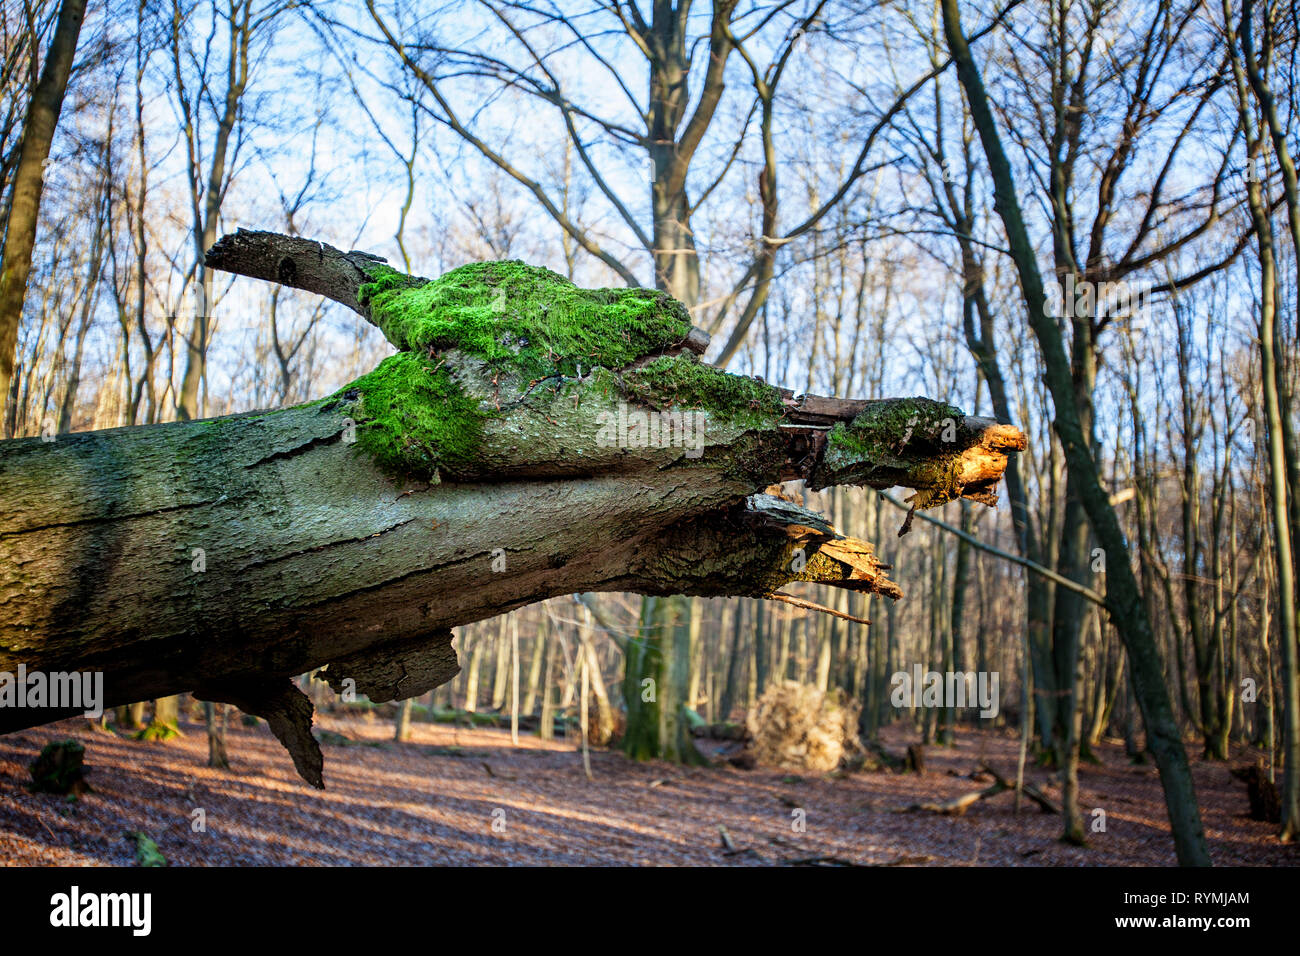 Tête de dragon dans un arbre, forêt vierge Urwald Sababurg, Warburg, Weser Uplands, Thuringe, Hesse, Allemagne Banque D'Images